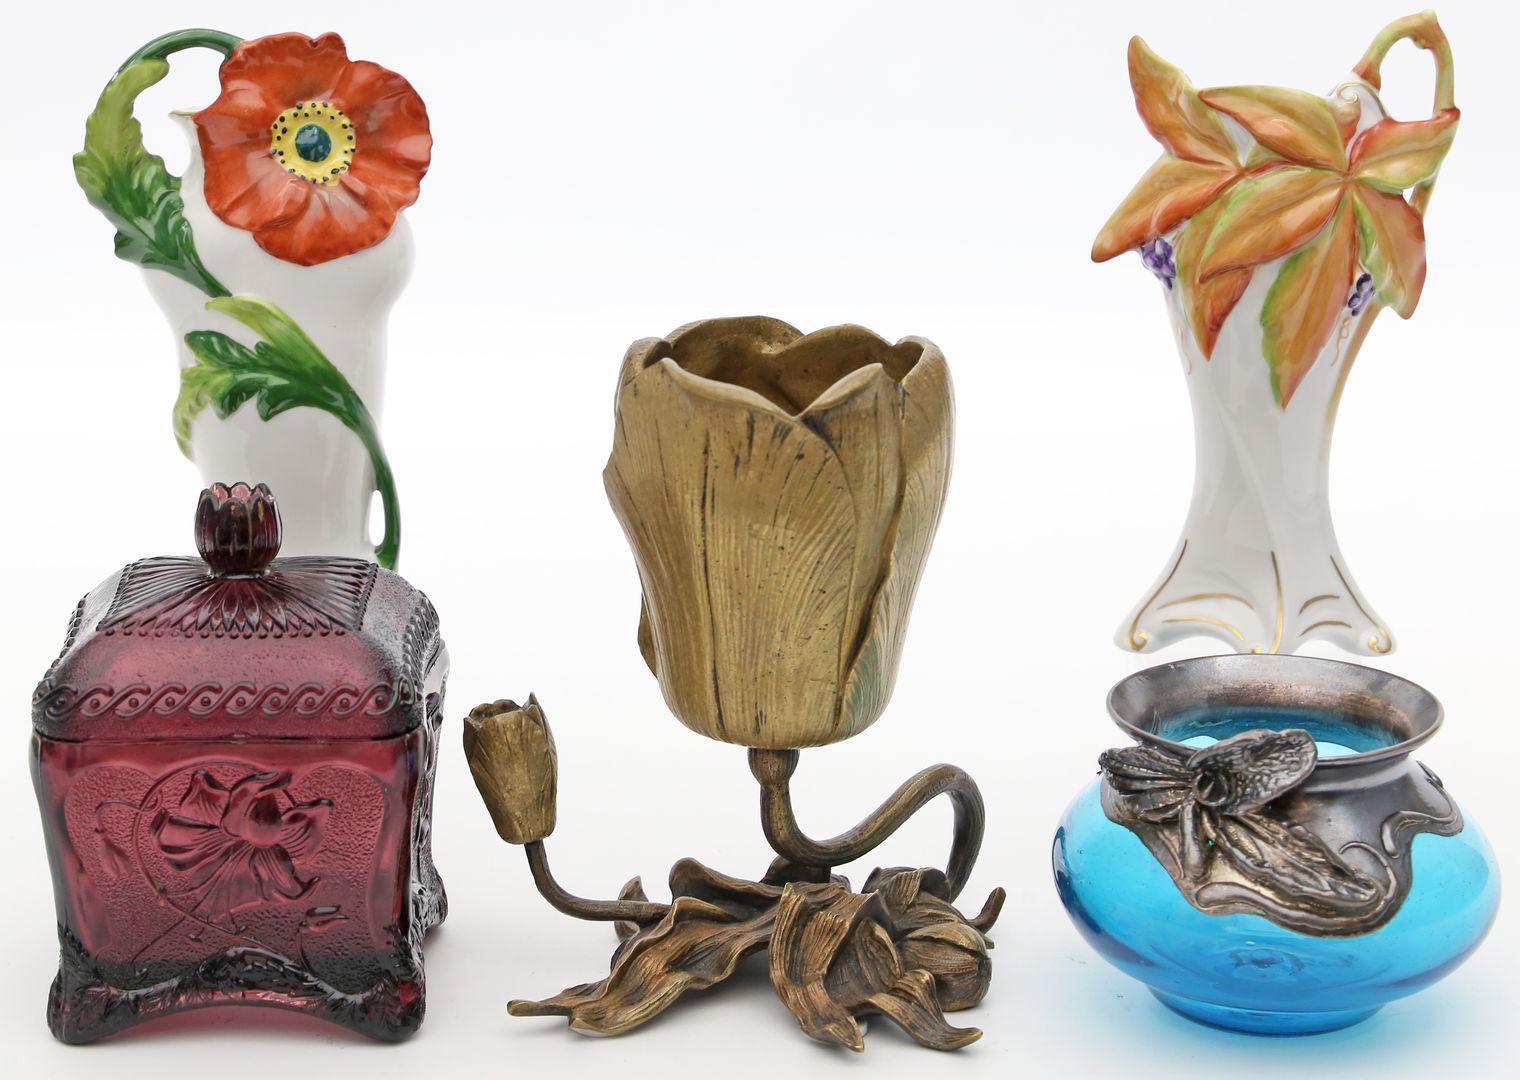 Deckeldose und 4 Vasen im Stil des Jugendstils.